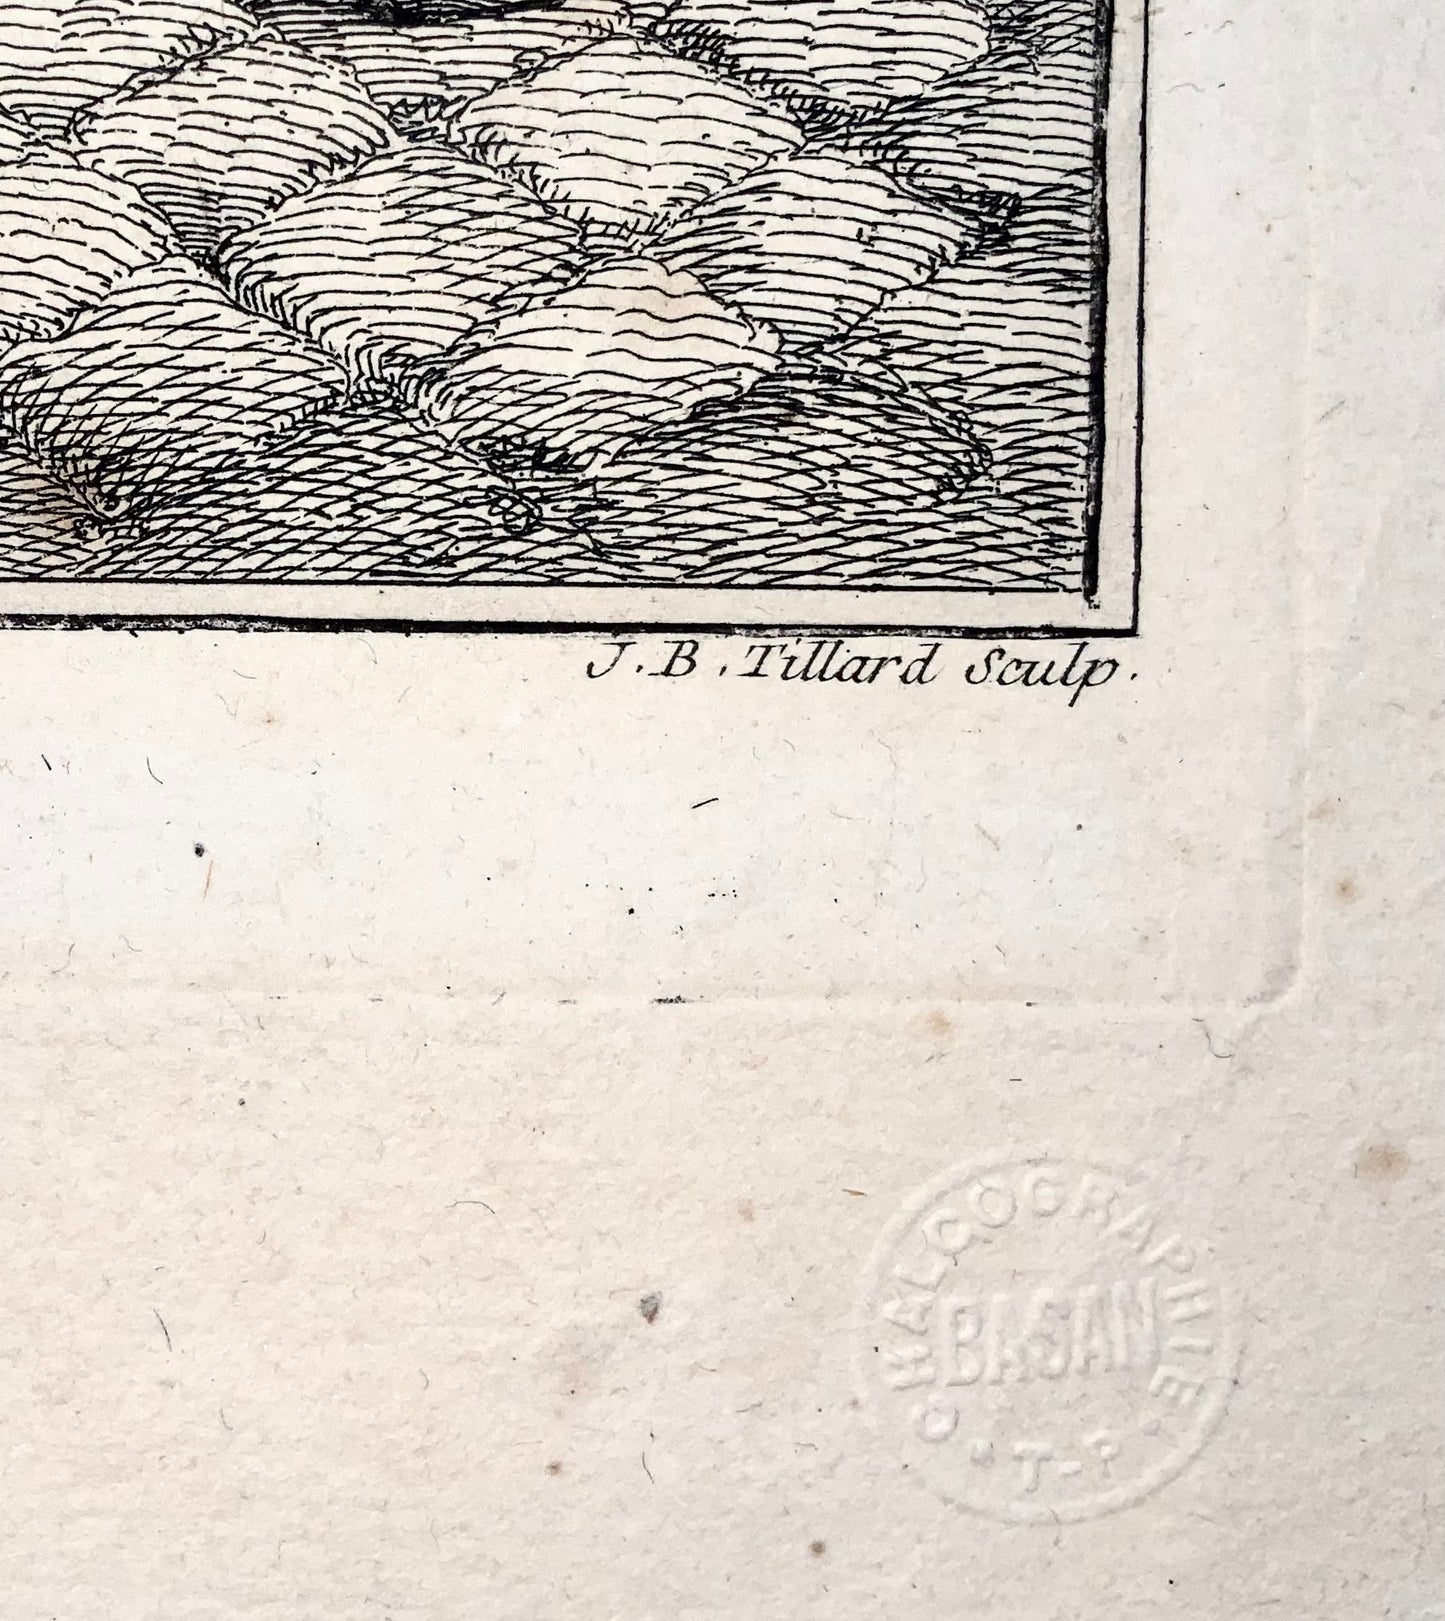 1768 Saint-Aubin, Carpenter, trade, etching, Les Commissionnaires ultramontains